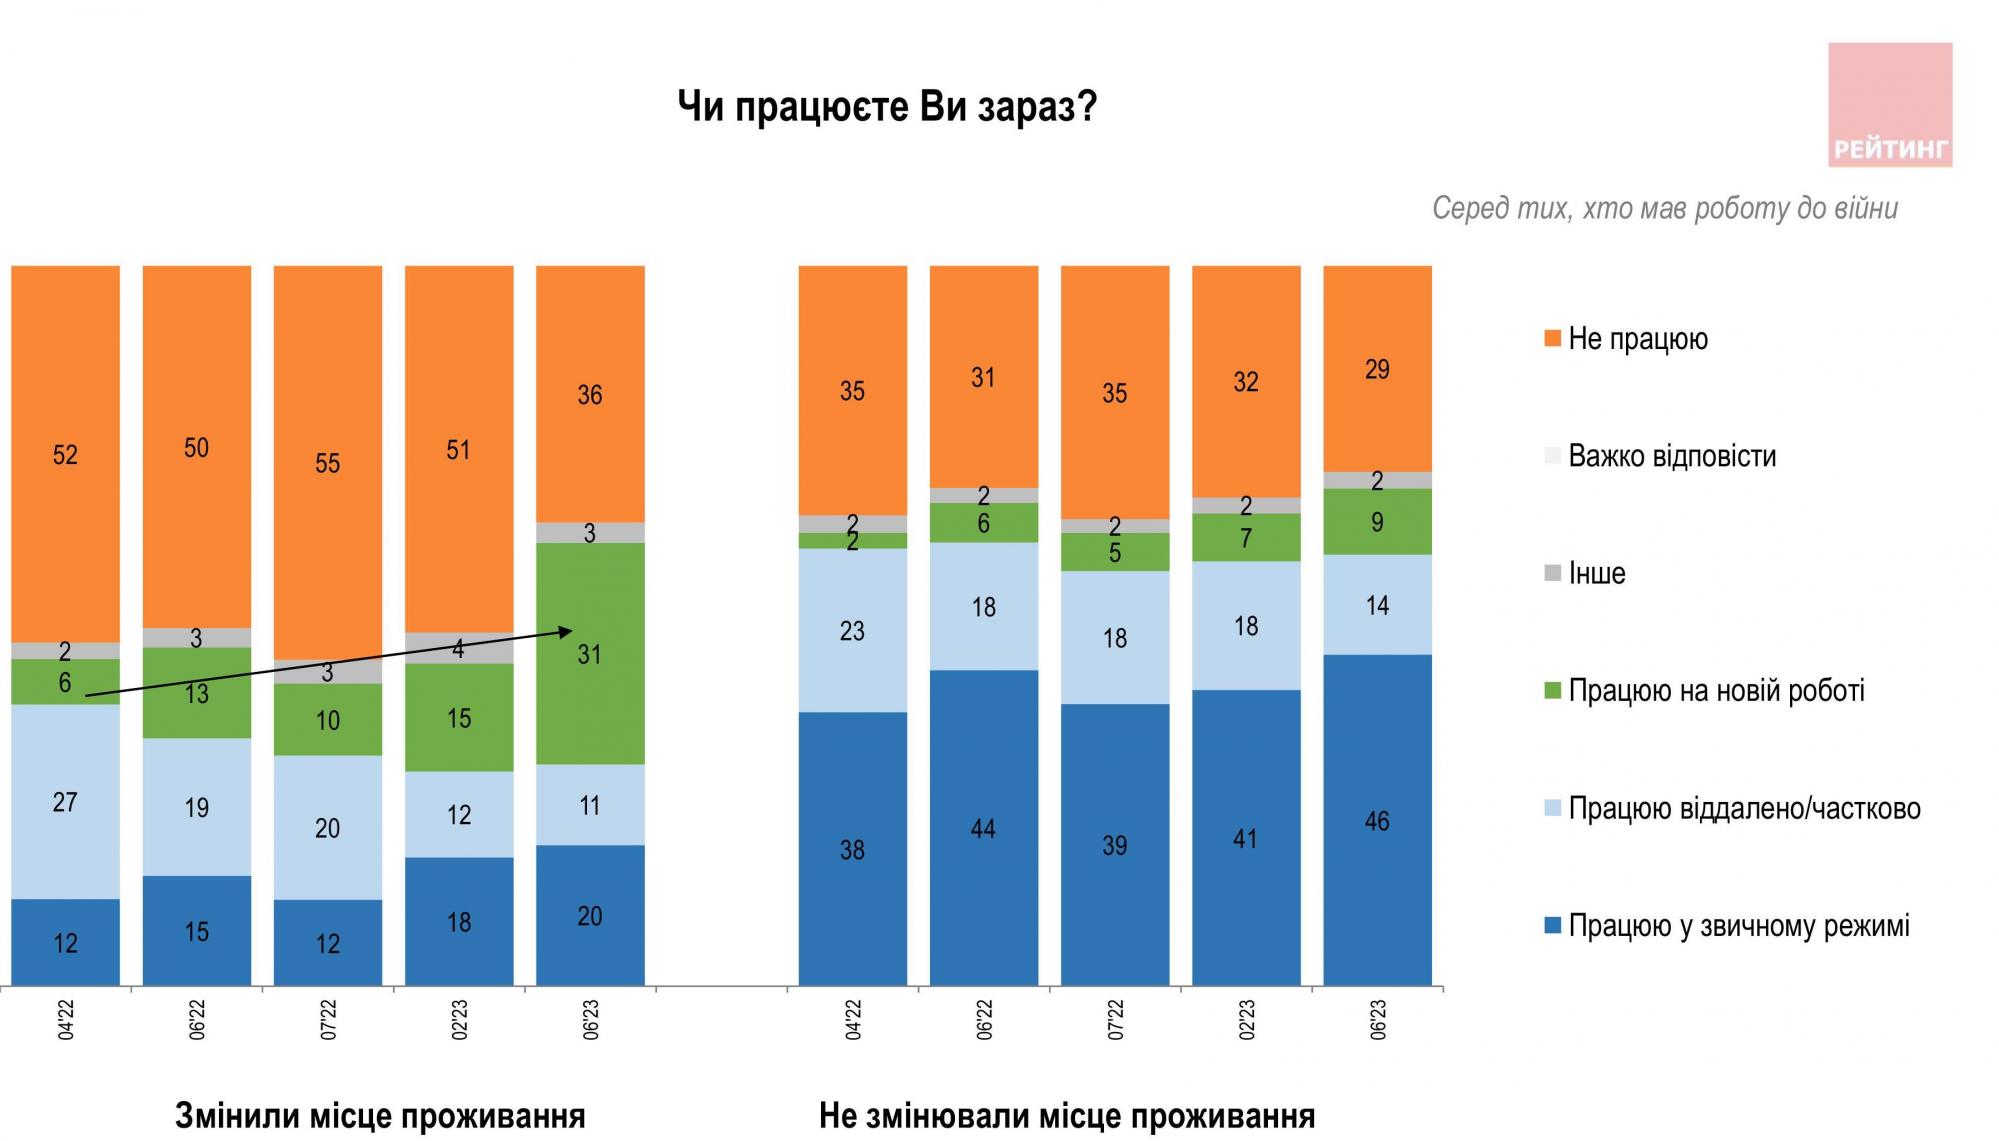 Більшість українців відчули погіршення економічного становища, майже третина без роботи